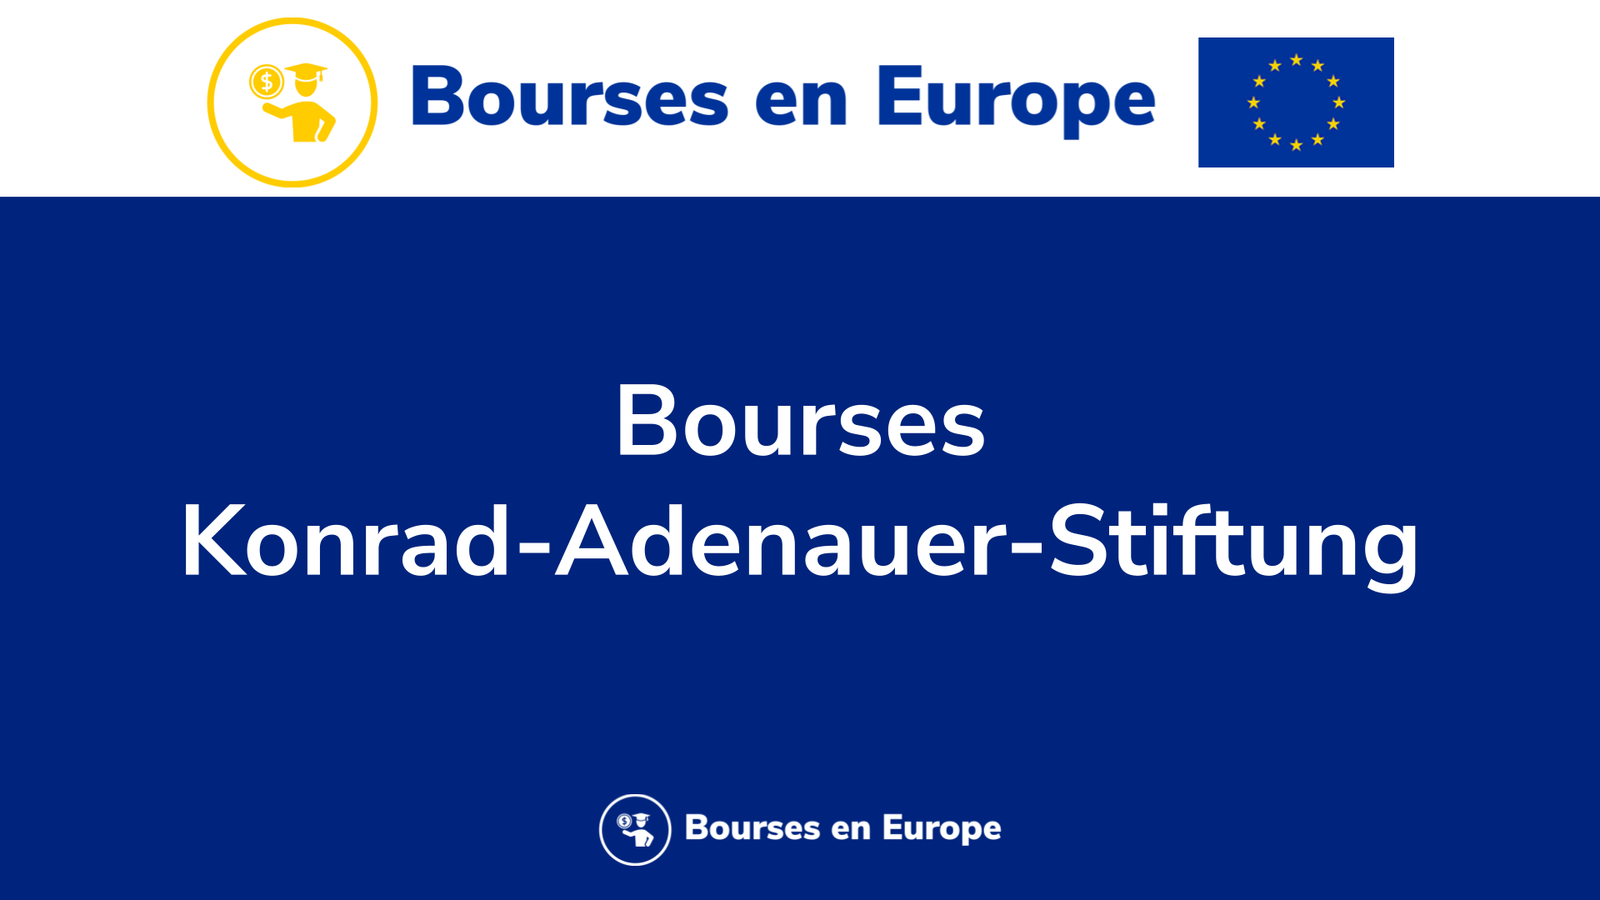 Bourses Konrad-Adenauer-Stiftung